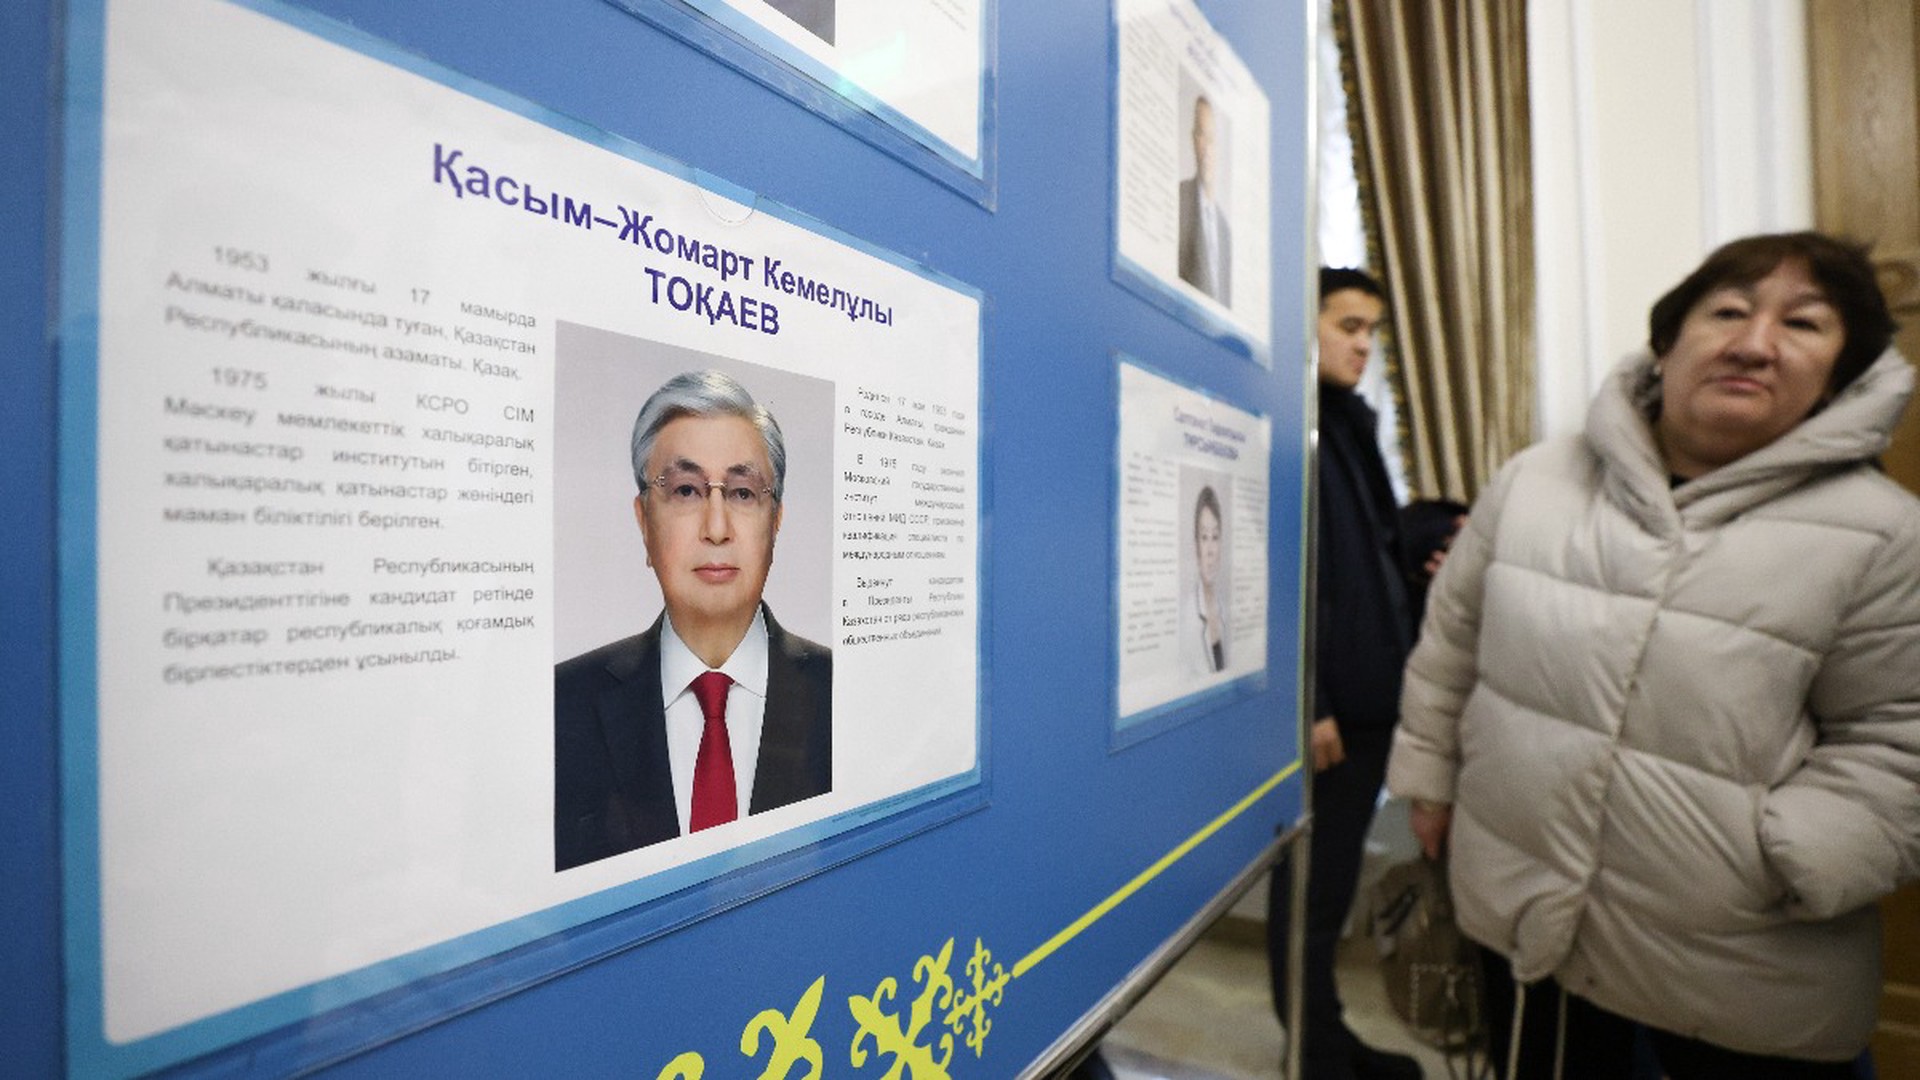 Токаев: президентские выборы в Казахстане открывают новую политическую эпоху